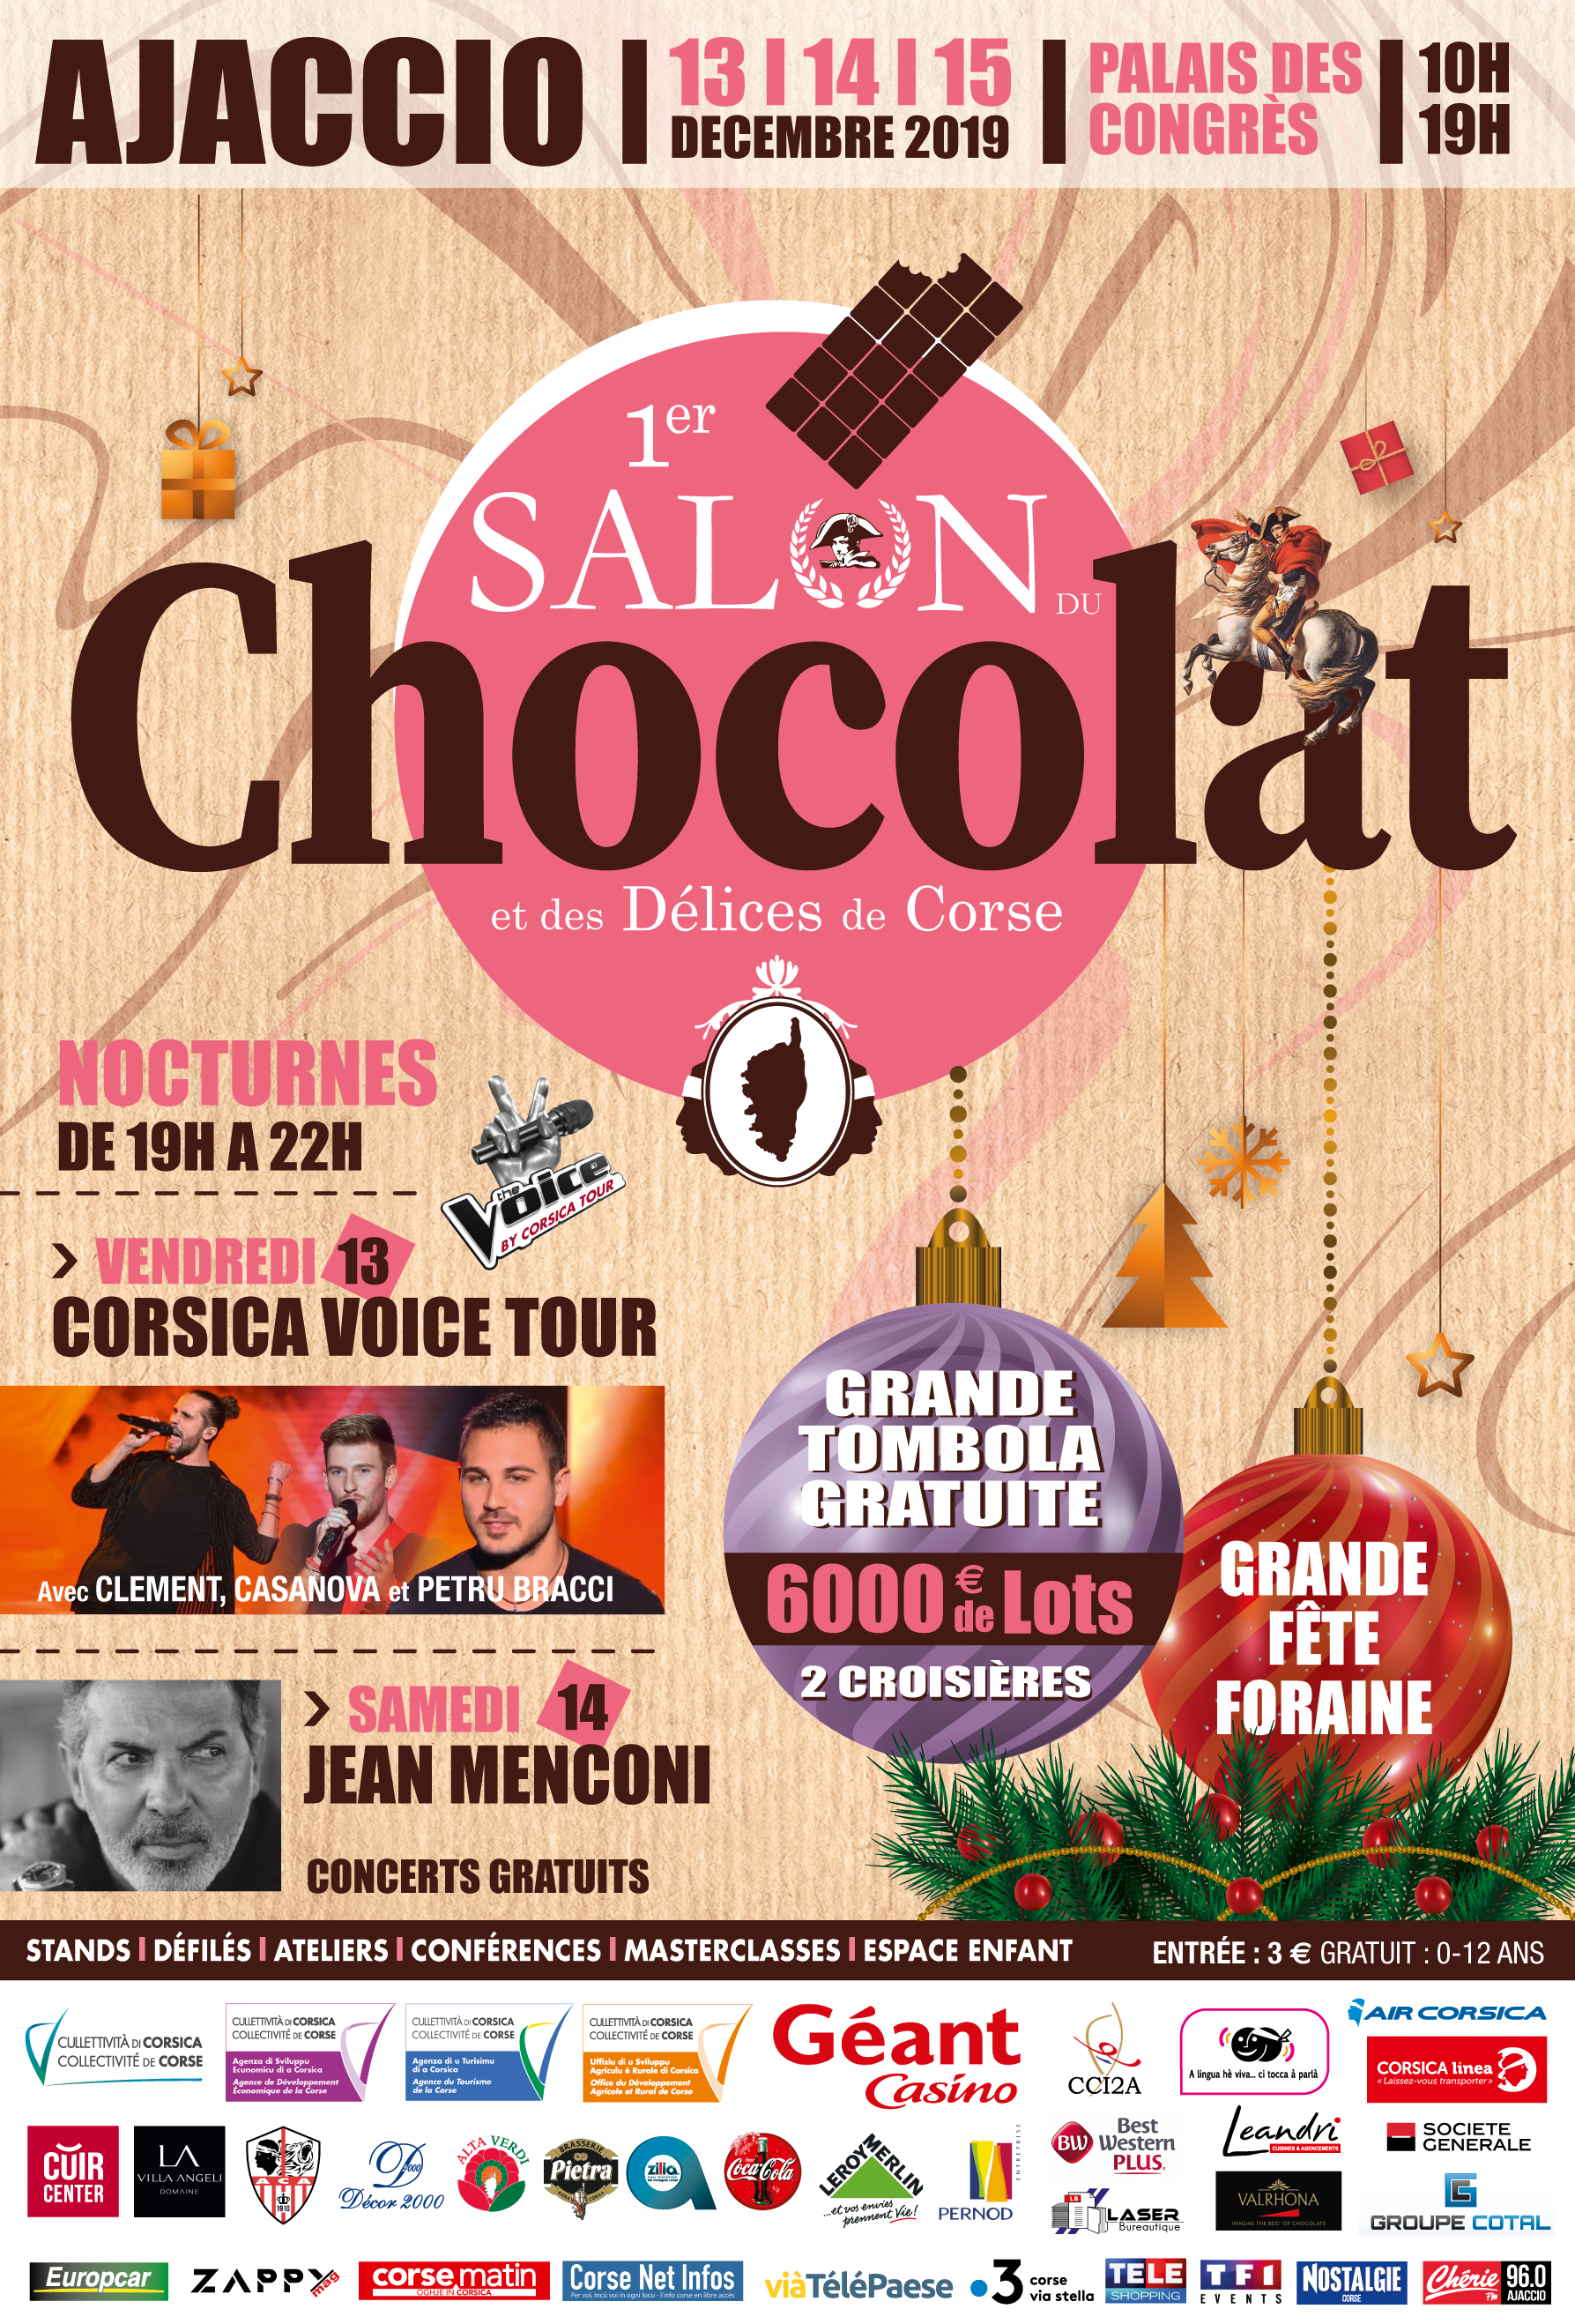 Le Salon du chocolat et des délices de Corse s'installe à Ajaccio